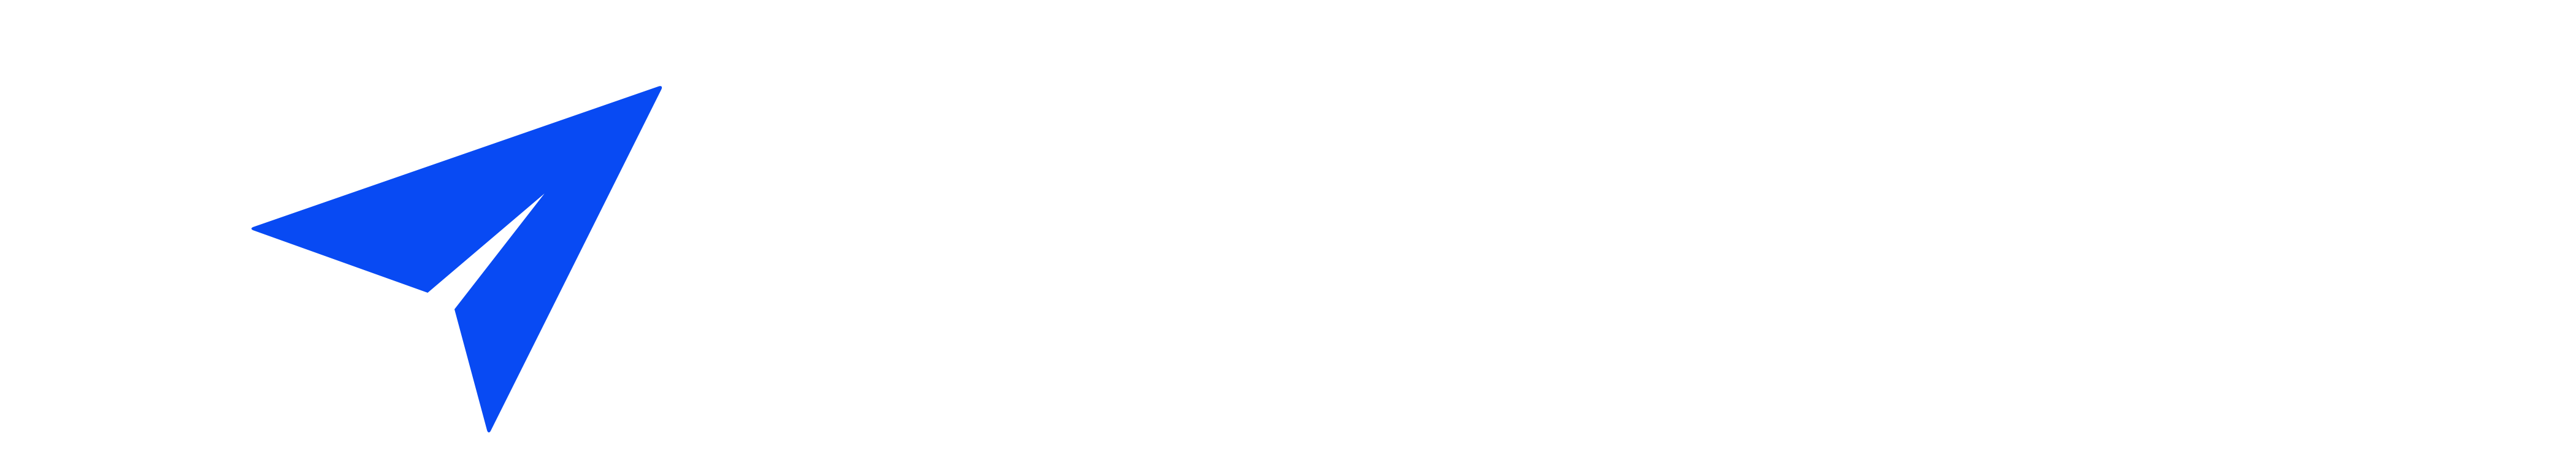 Math Tutor Clinic